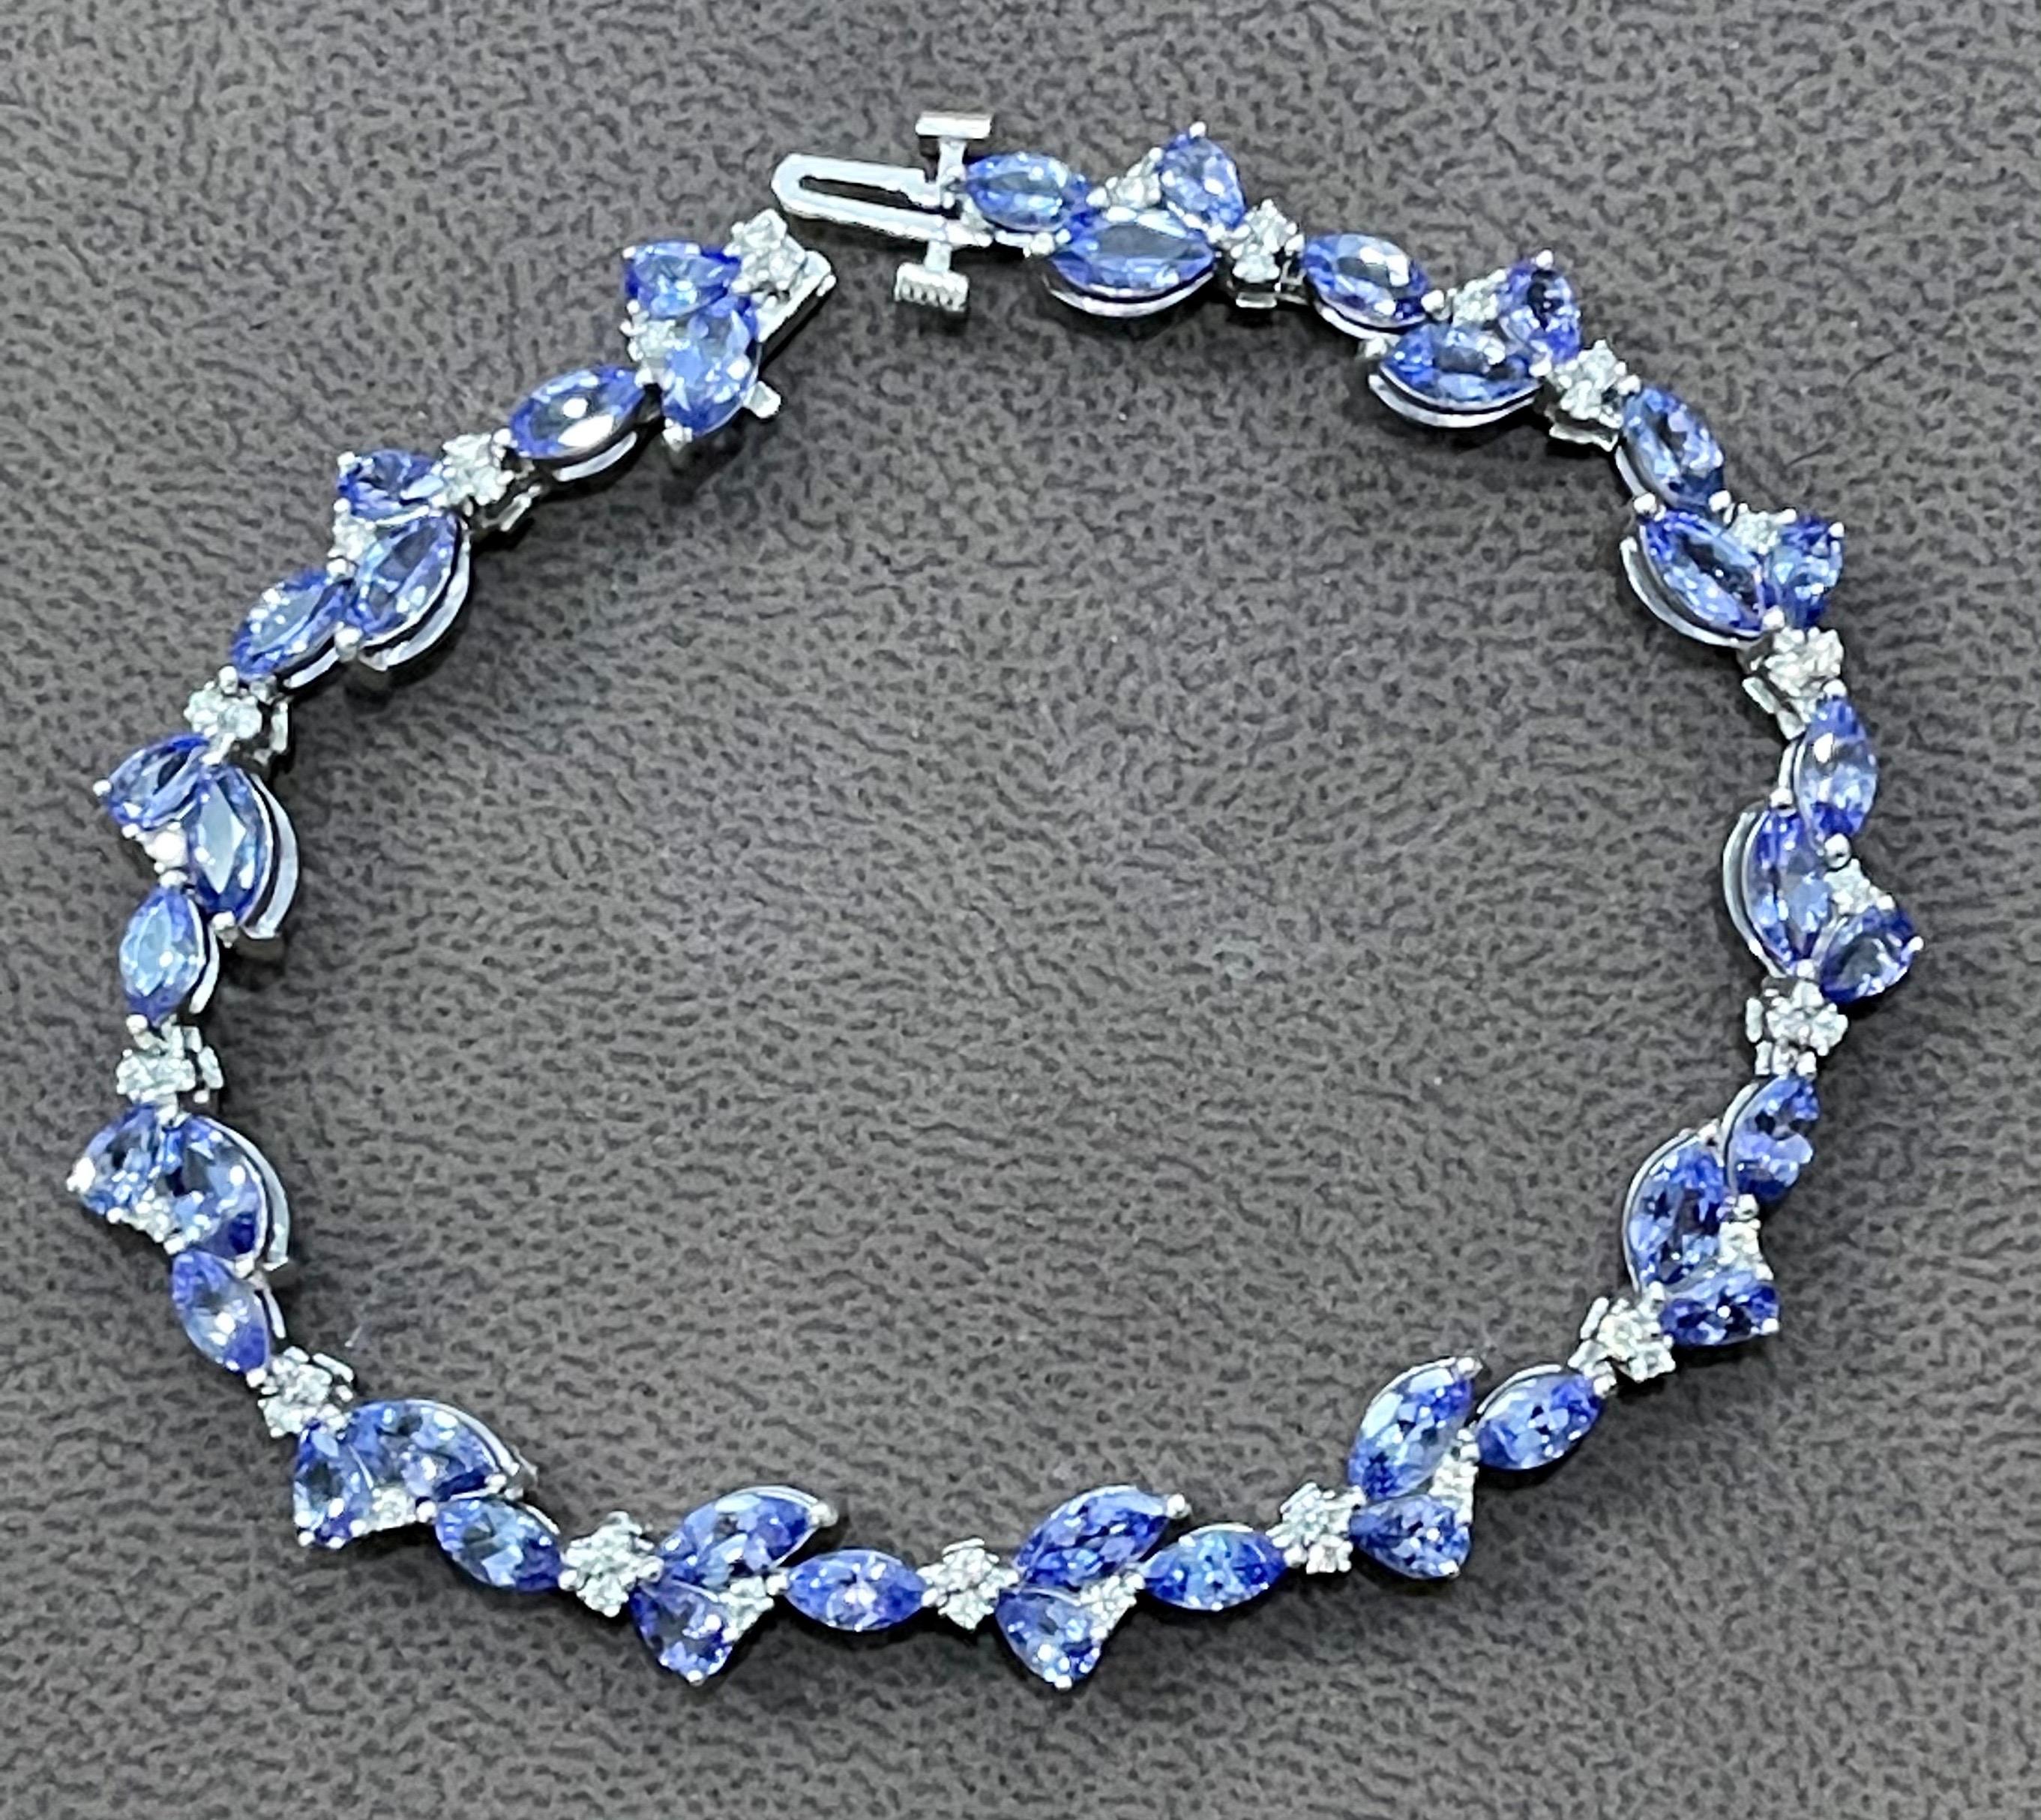 Marquise Cut Effy's 9 Carat Tanzanite & 0.5 Carat Diamond Tennis Bracelet 14 Karat White Gold